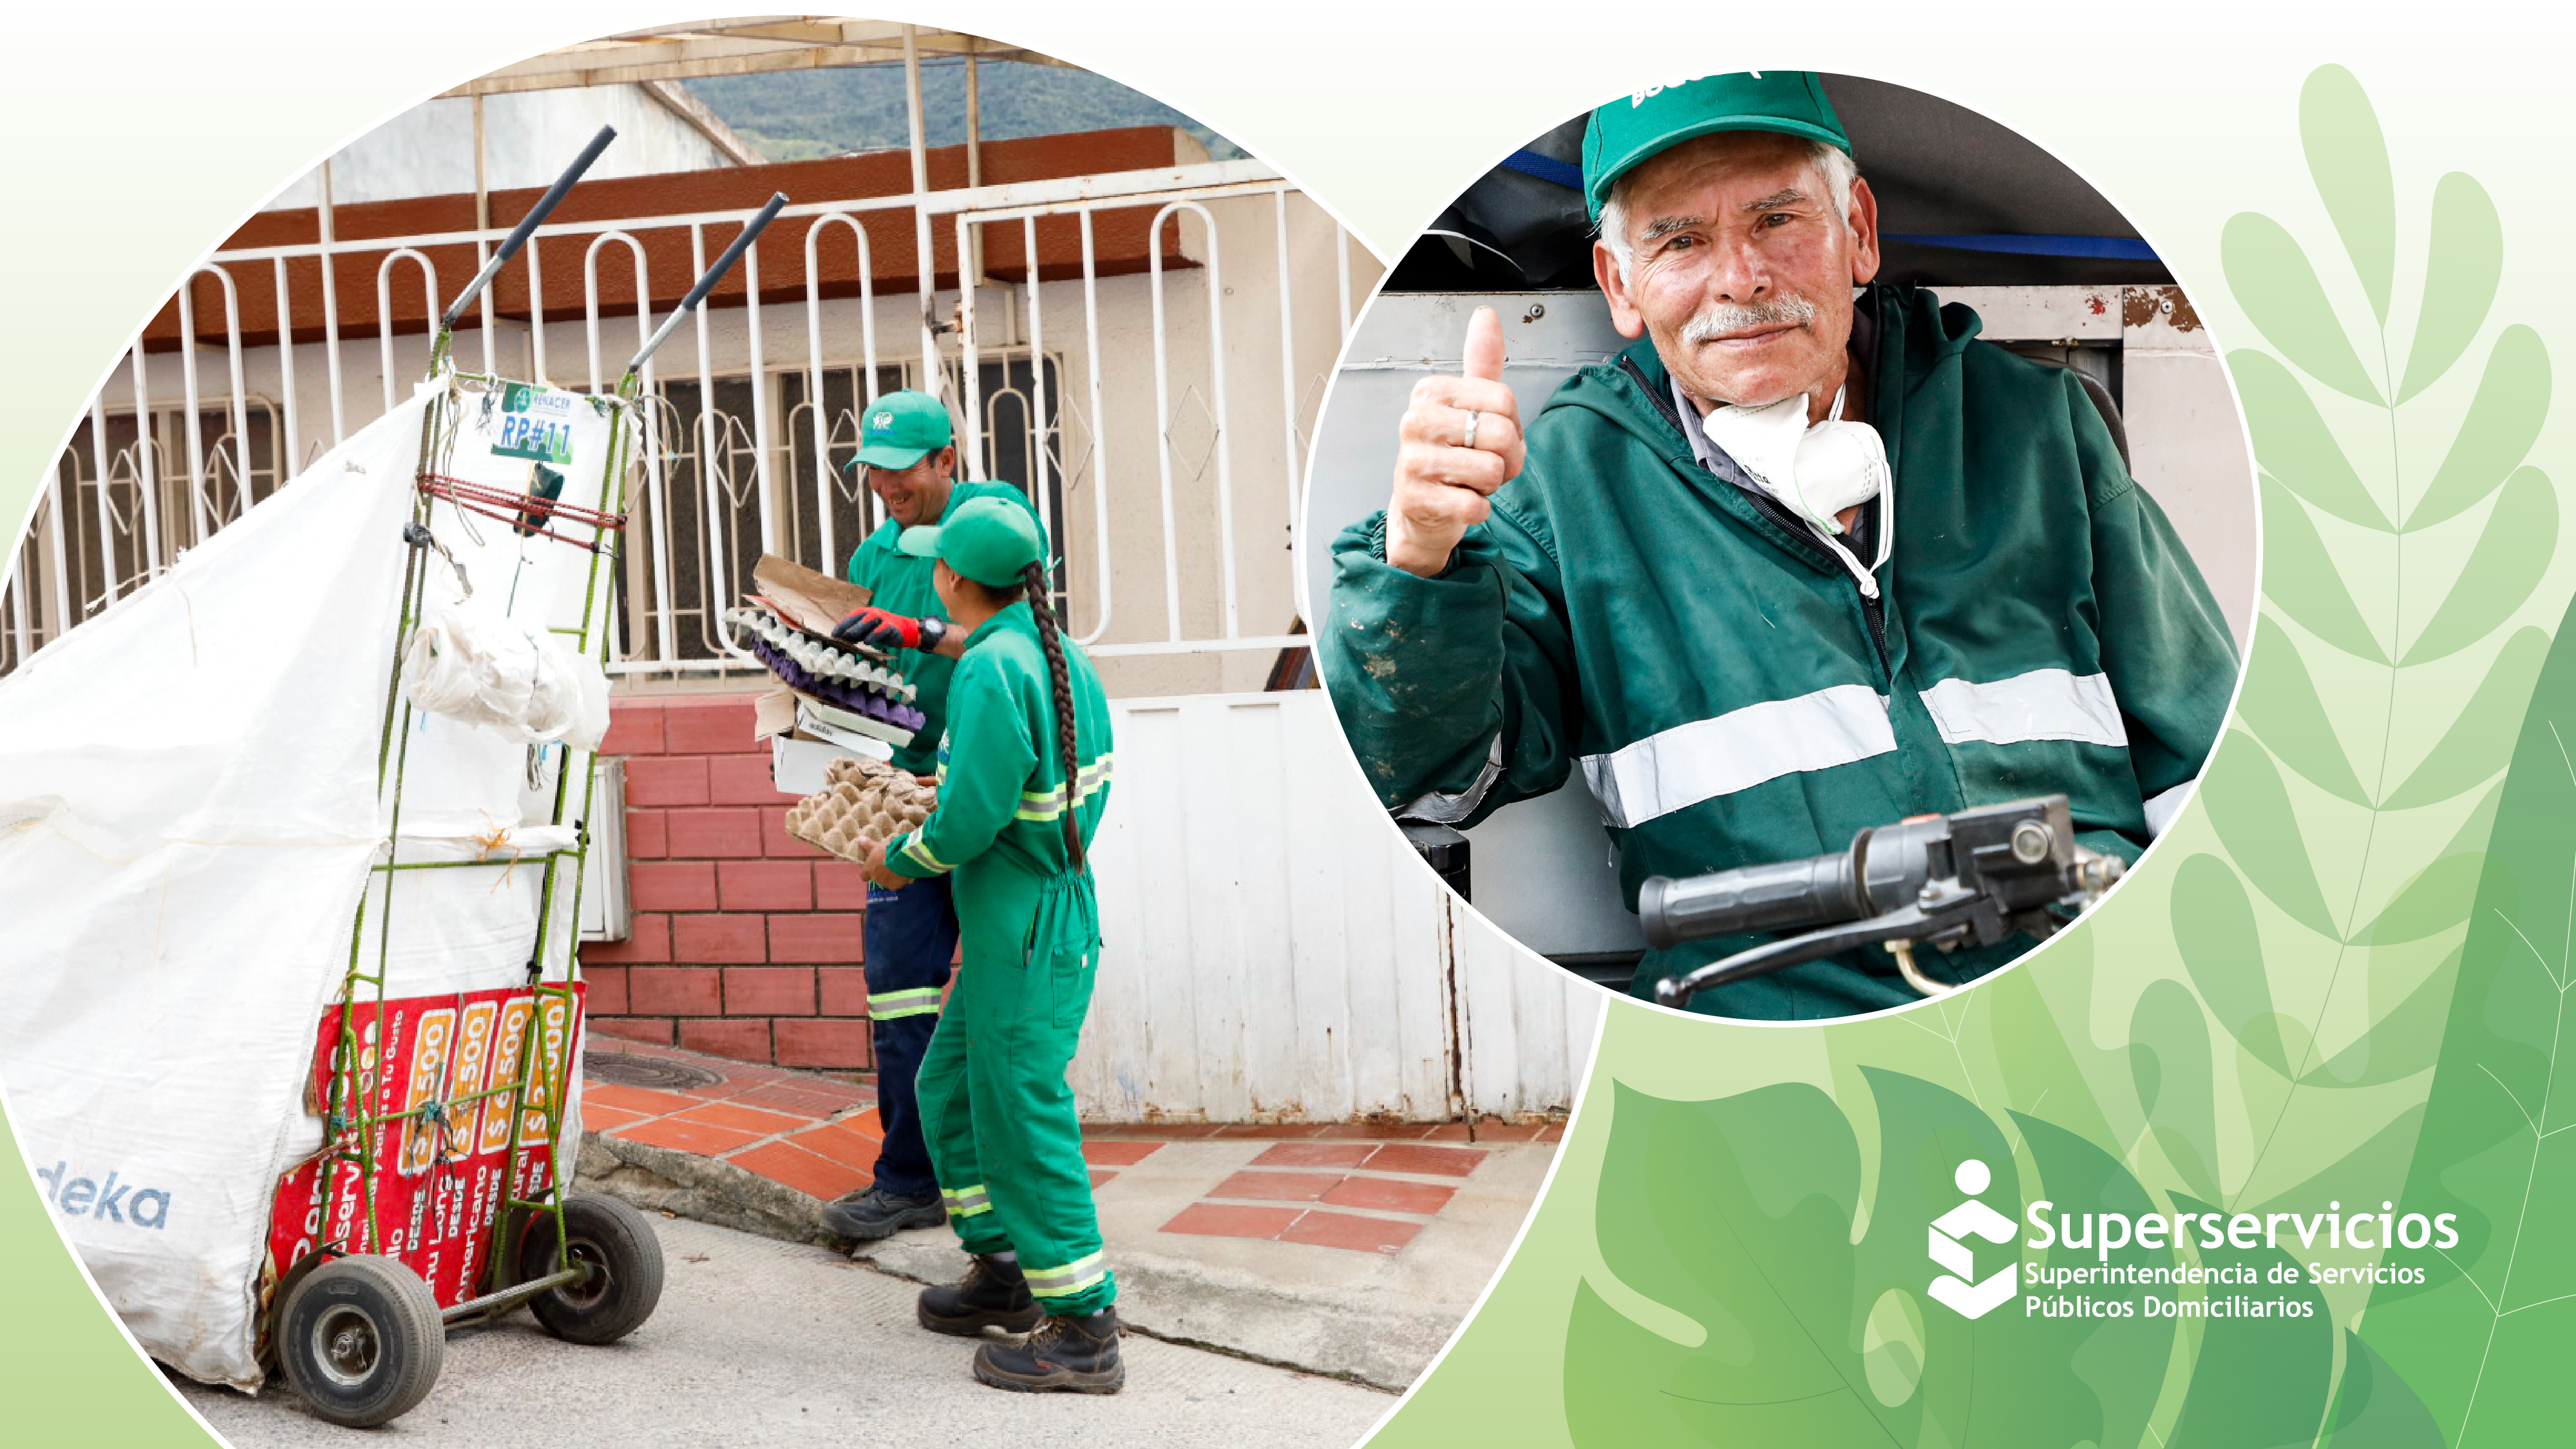 Más de 68 mil recicladores de oficio reciben acompañamiento de la Superservicios para formalizar y dignificar su labor
